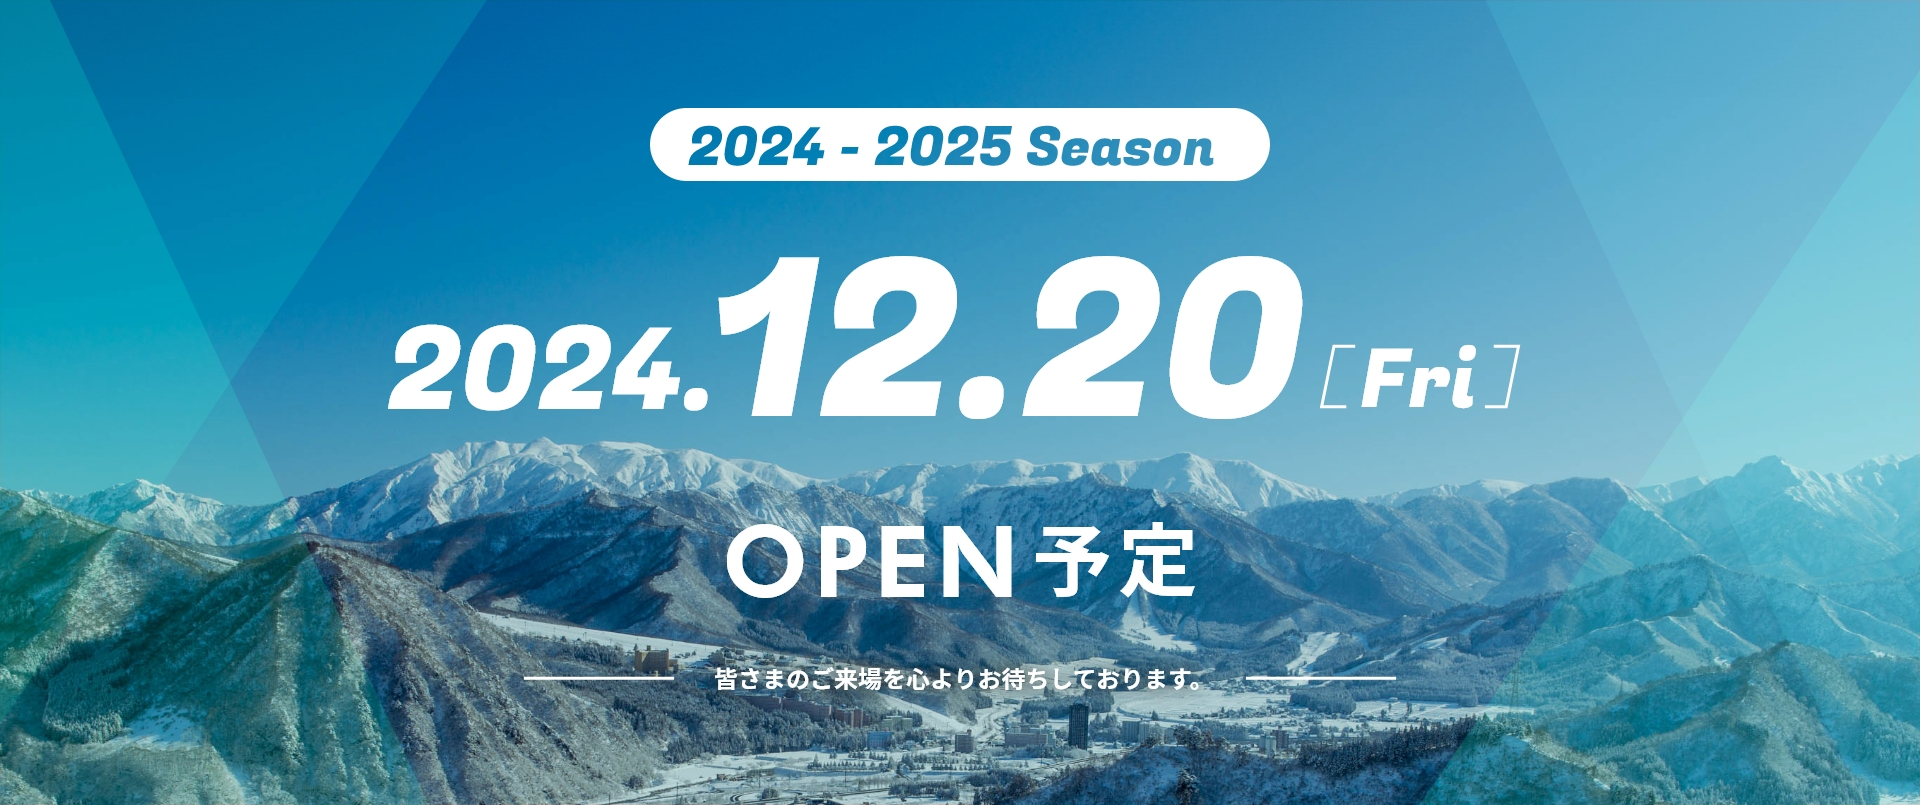 2024から2025シーズン 12月20日 金曜日 オープン予定 皆さまのご来場を心よりお待ちしております。